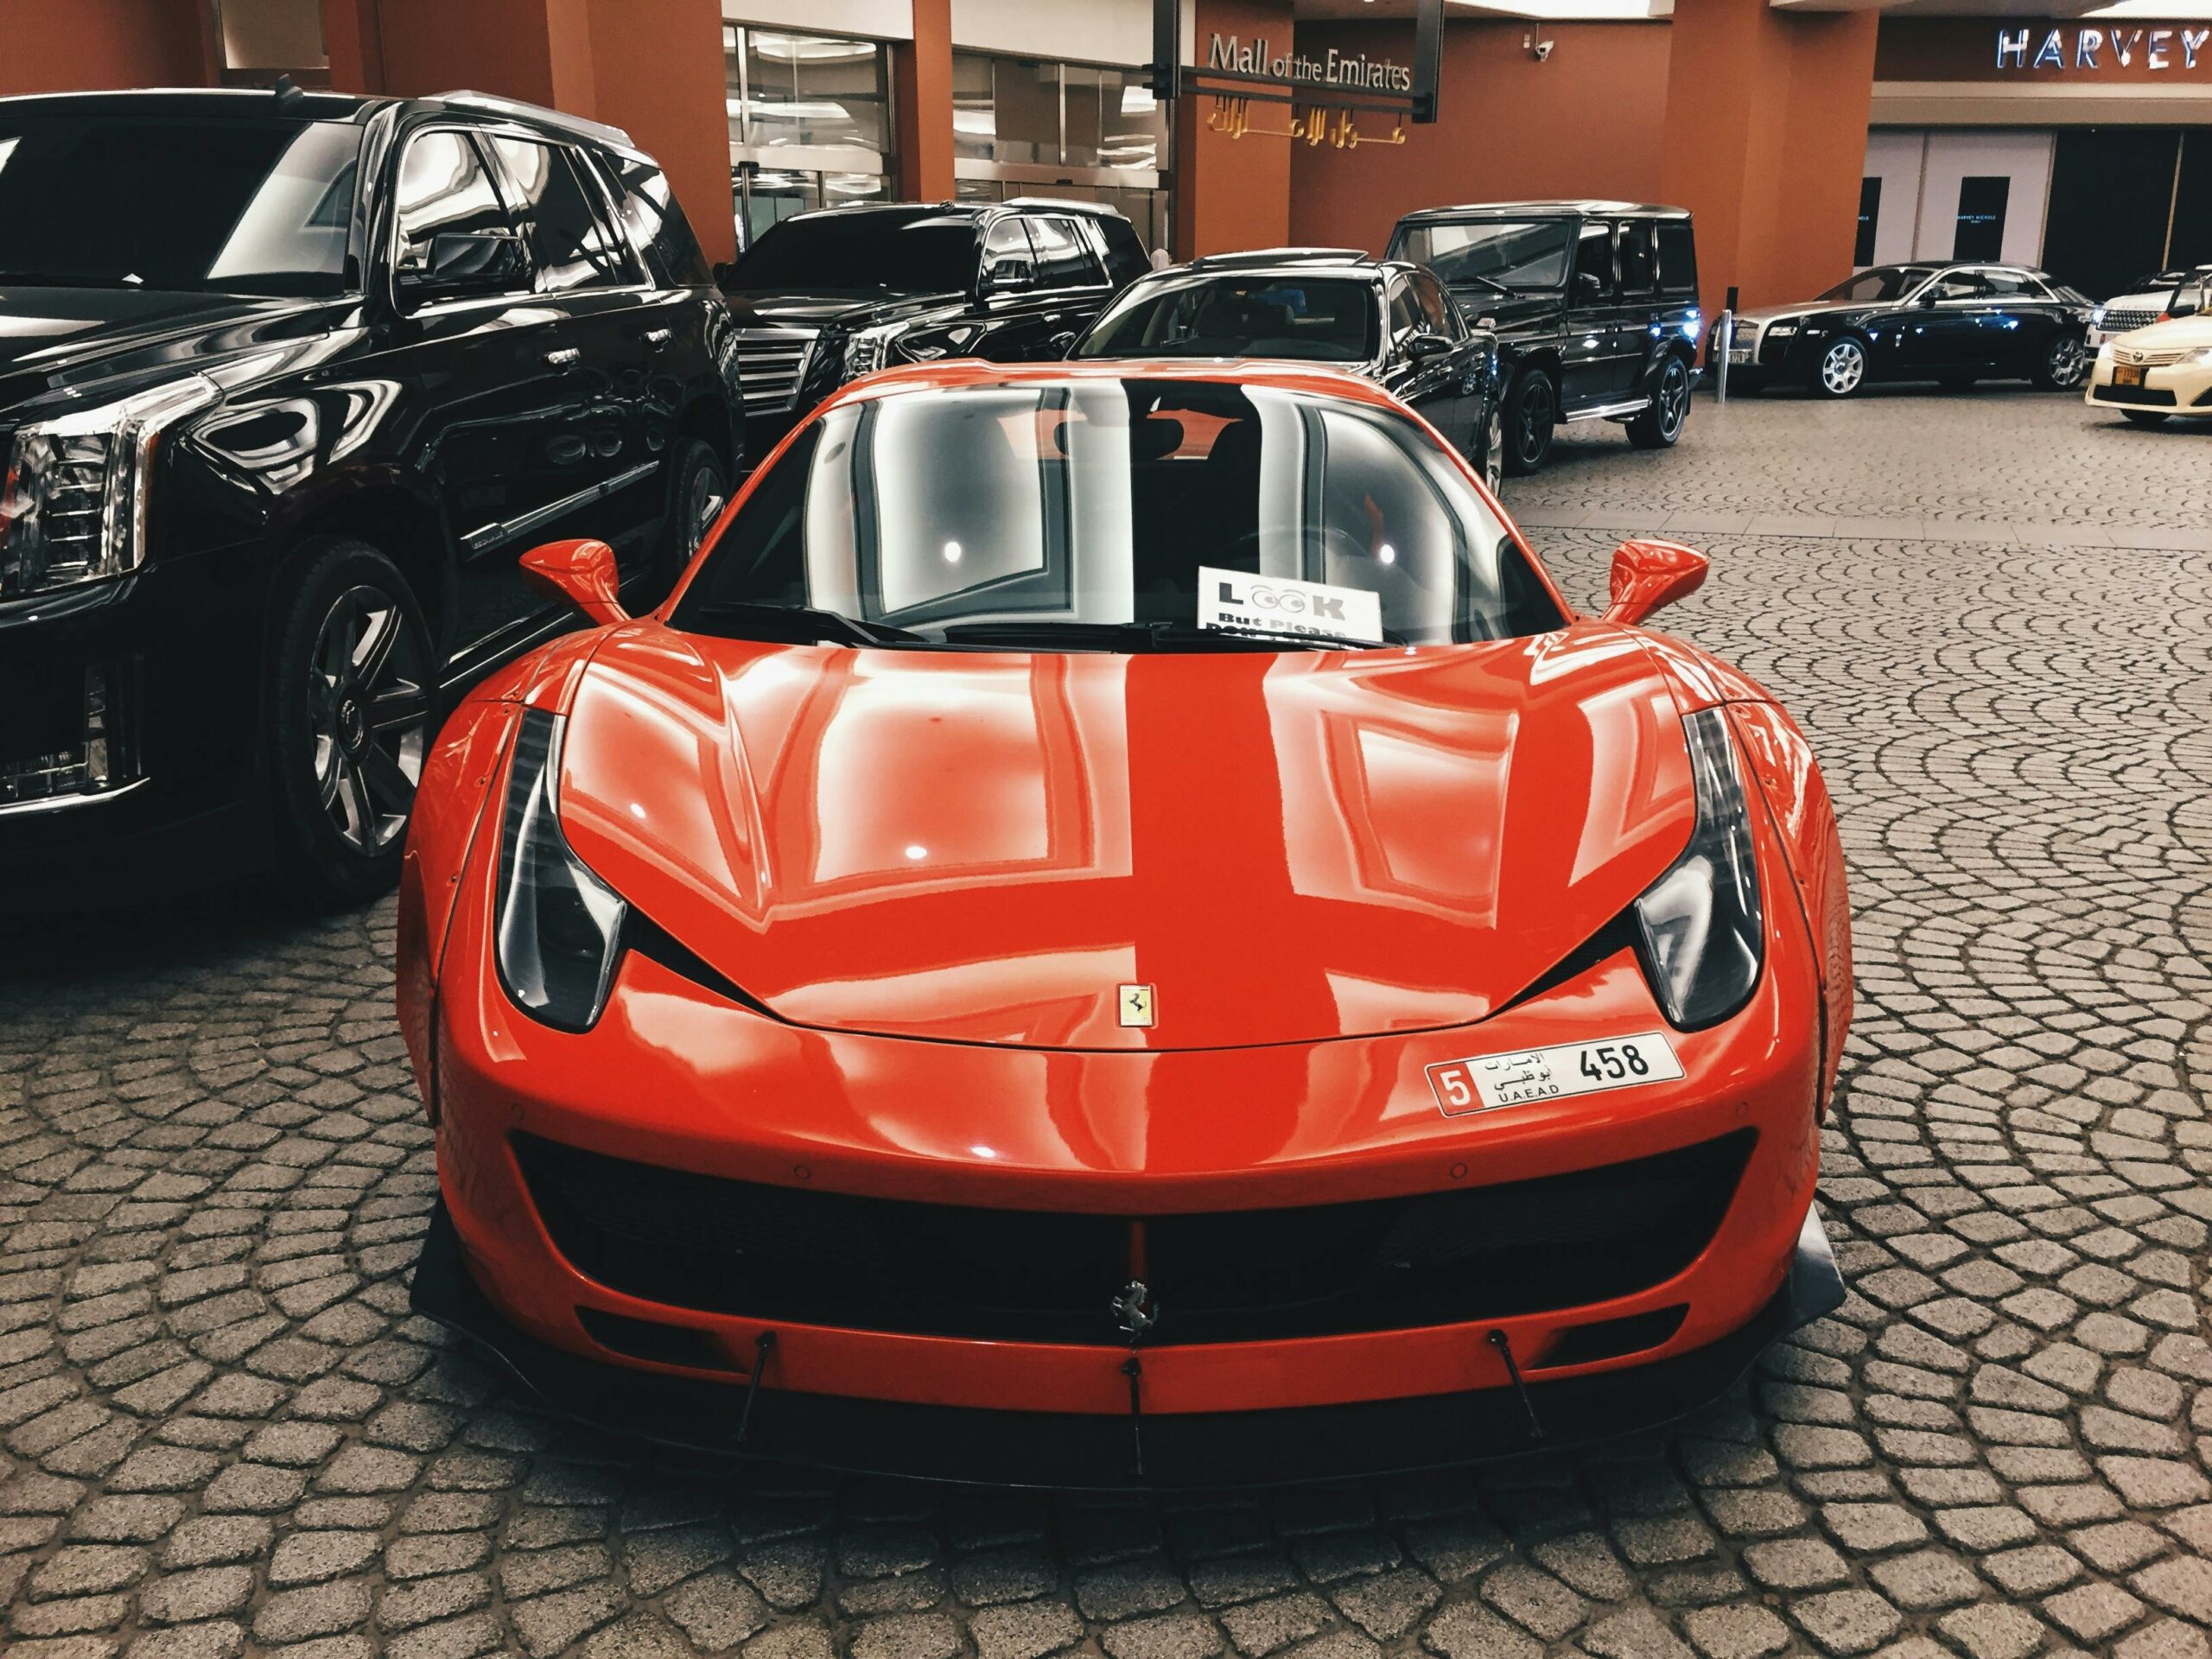 Au fost vândute peste 13.600 de mașini marca Ferrari. Sursa foto: pexel.com